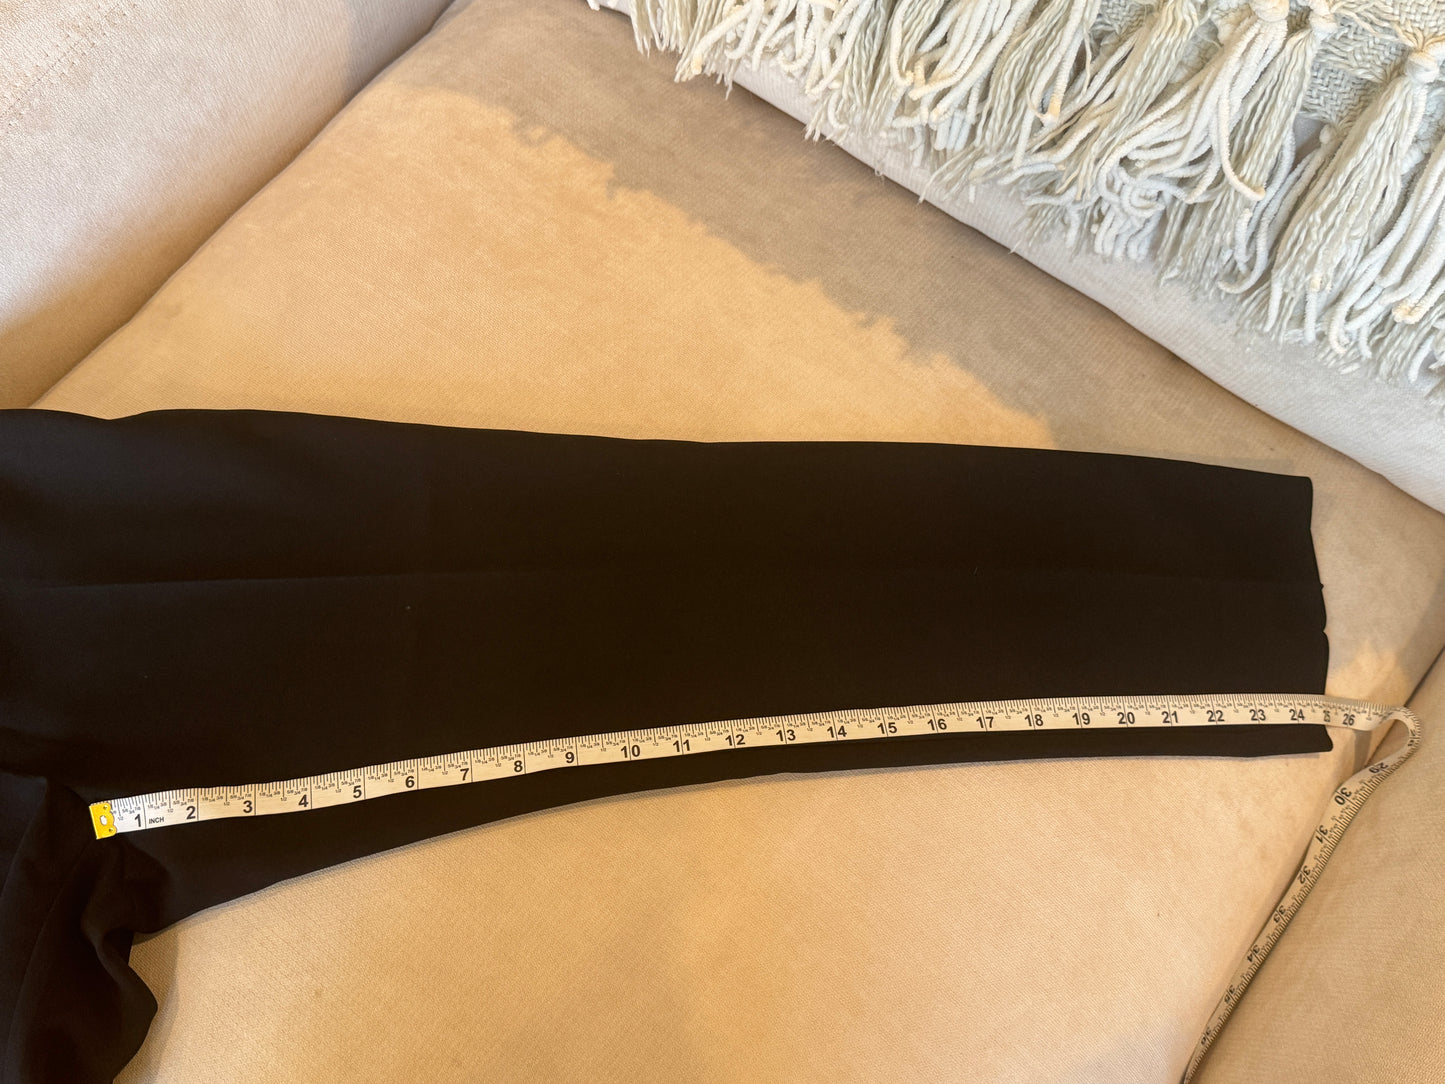 Chanel Uniform Black Crop Trouser